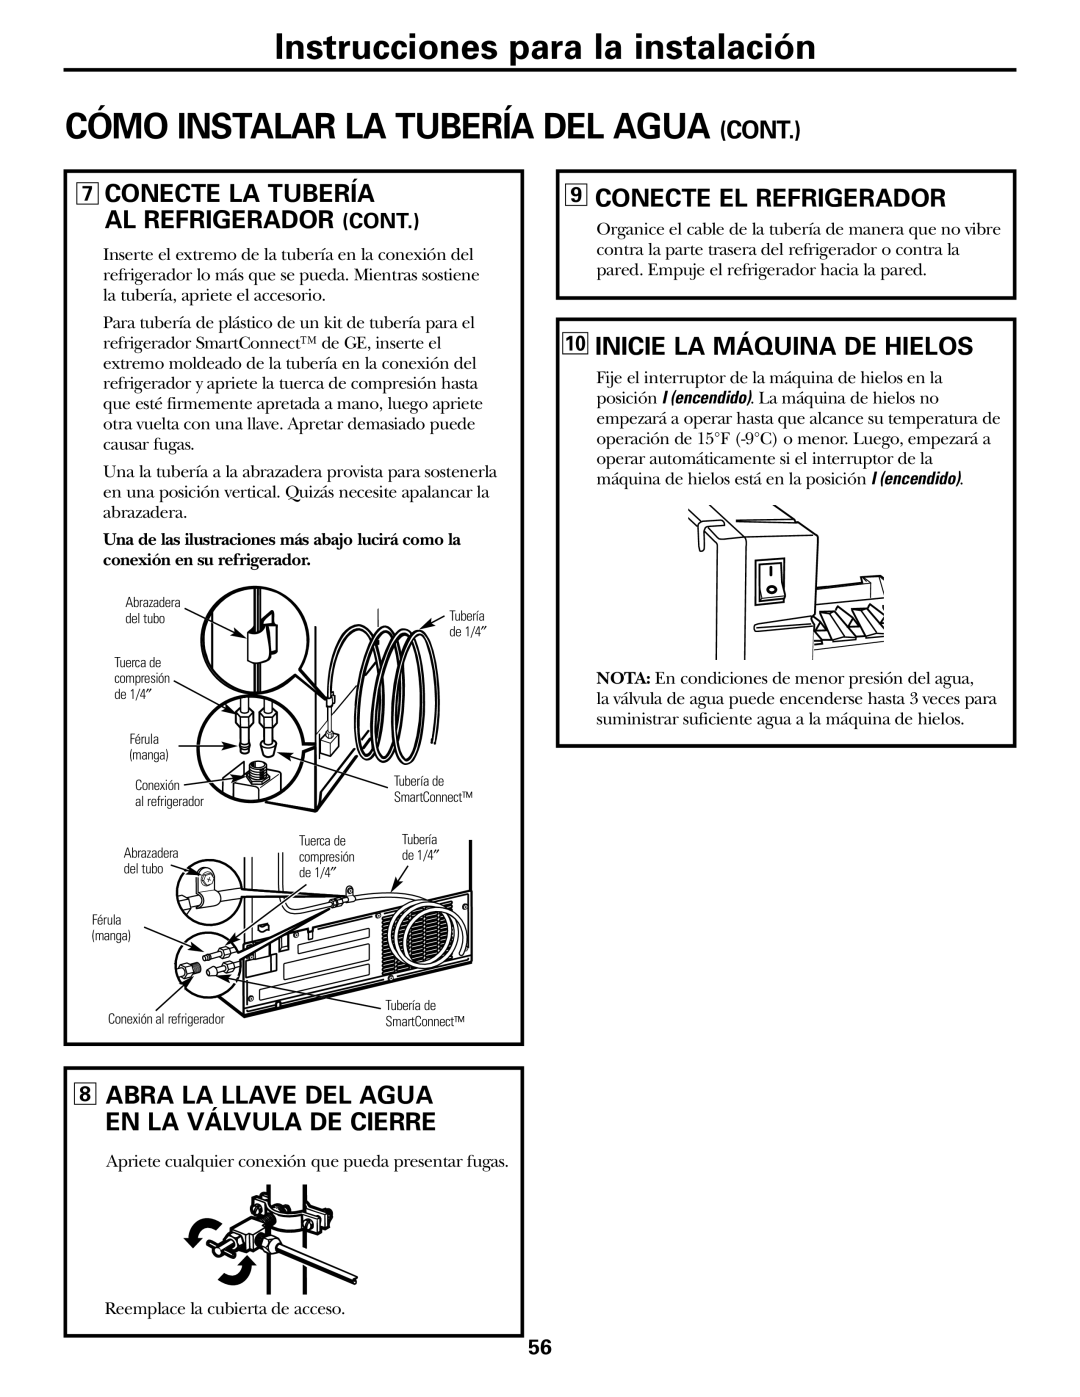 GE 20 manuel dutilisation Conecte La Tubería Al Refrigerador Cont, Conecte El Refrigerador, Inicie La Máquina De Hielos 